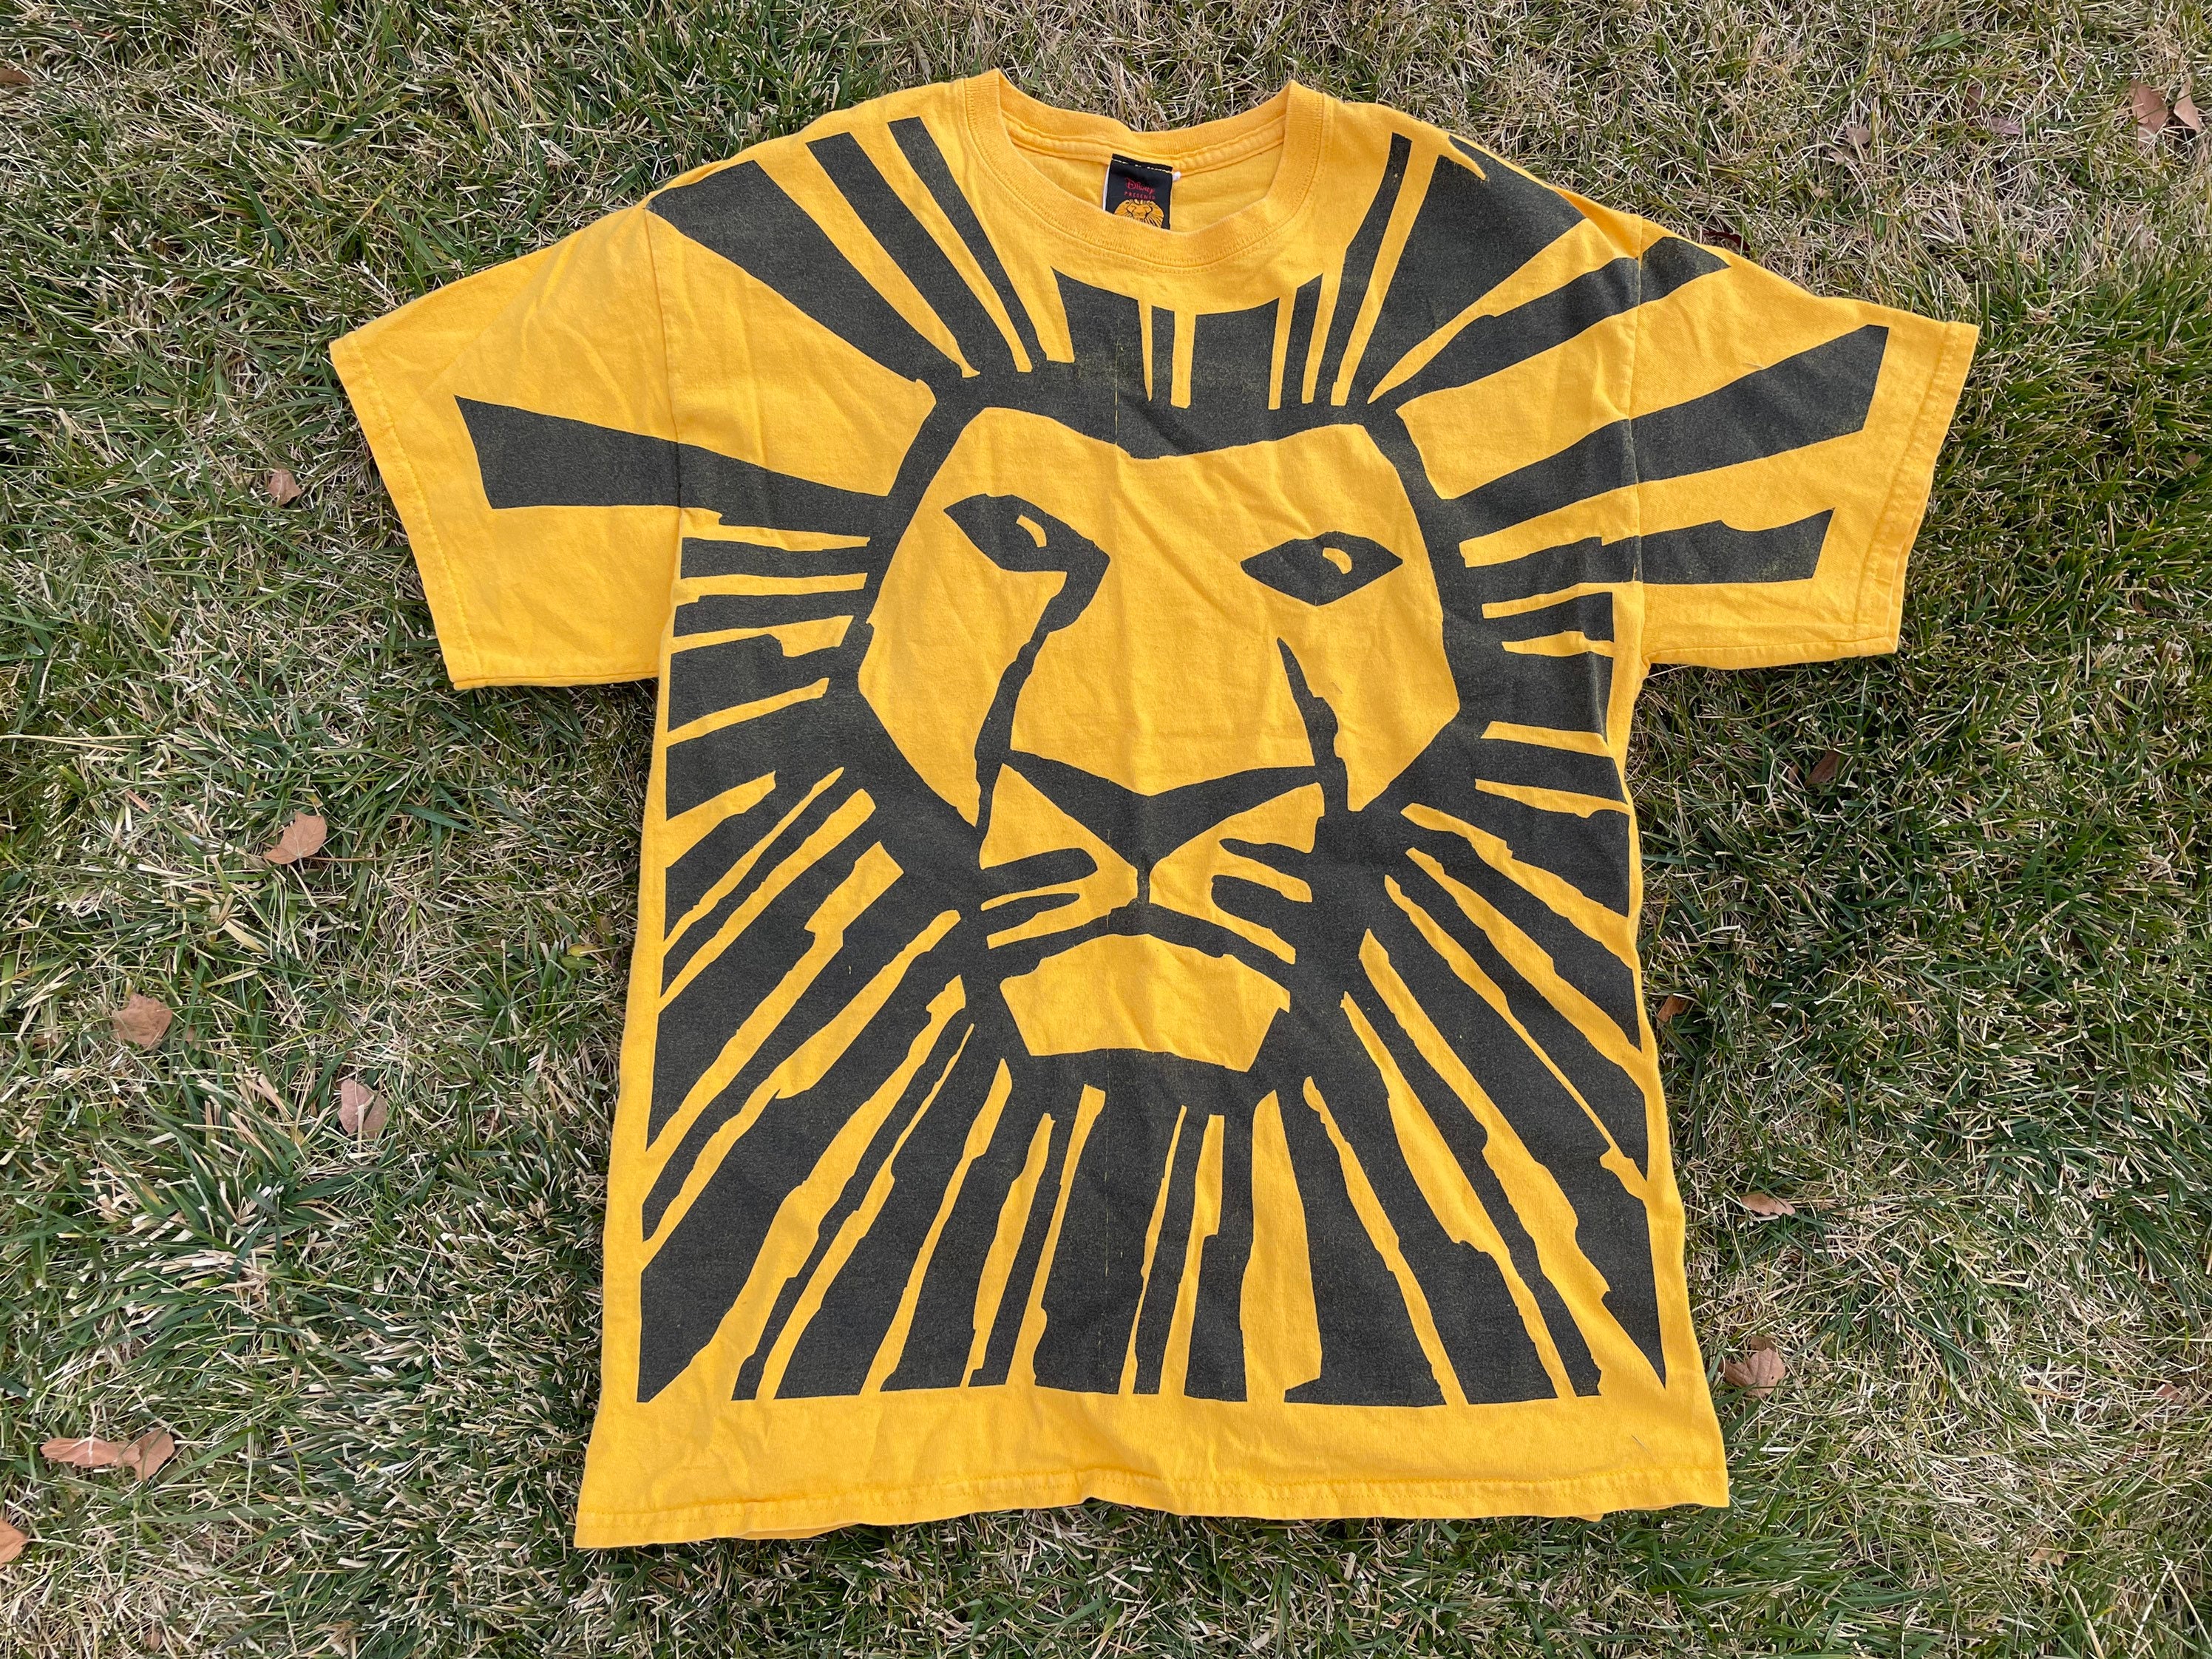 Kleding Jongenskleding Tops & T-shirts T-shirts T-shirts met print Vintage Lion King Allover Print Simba Shirt Jeugd Medium Disney 90s 